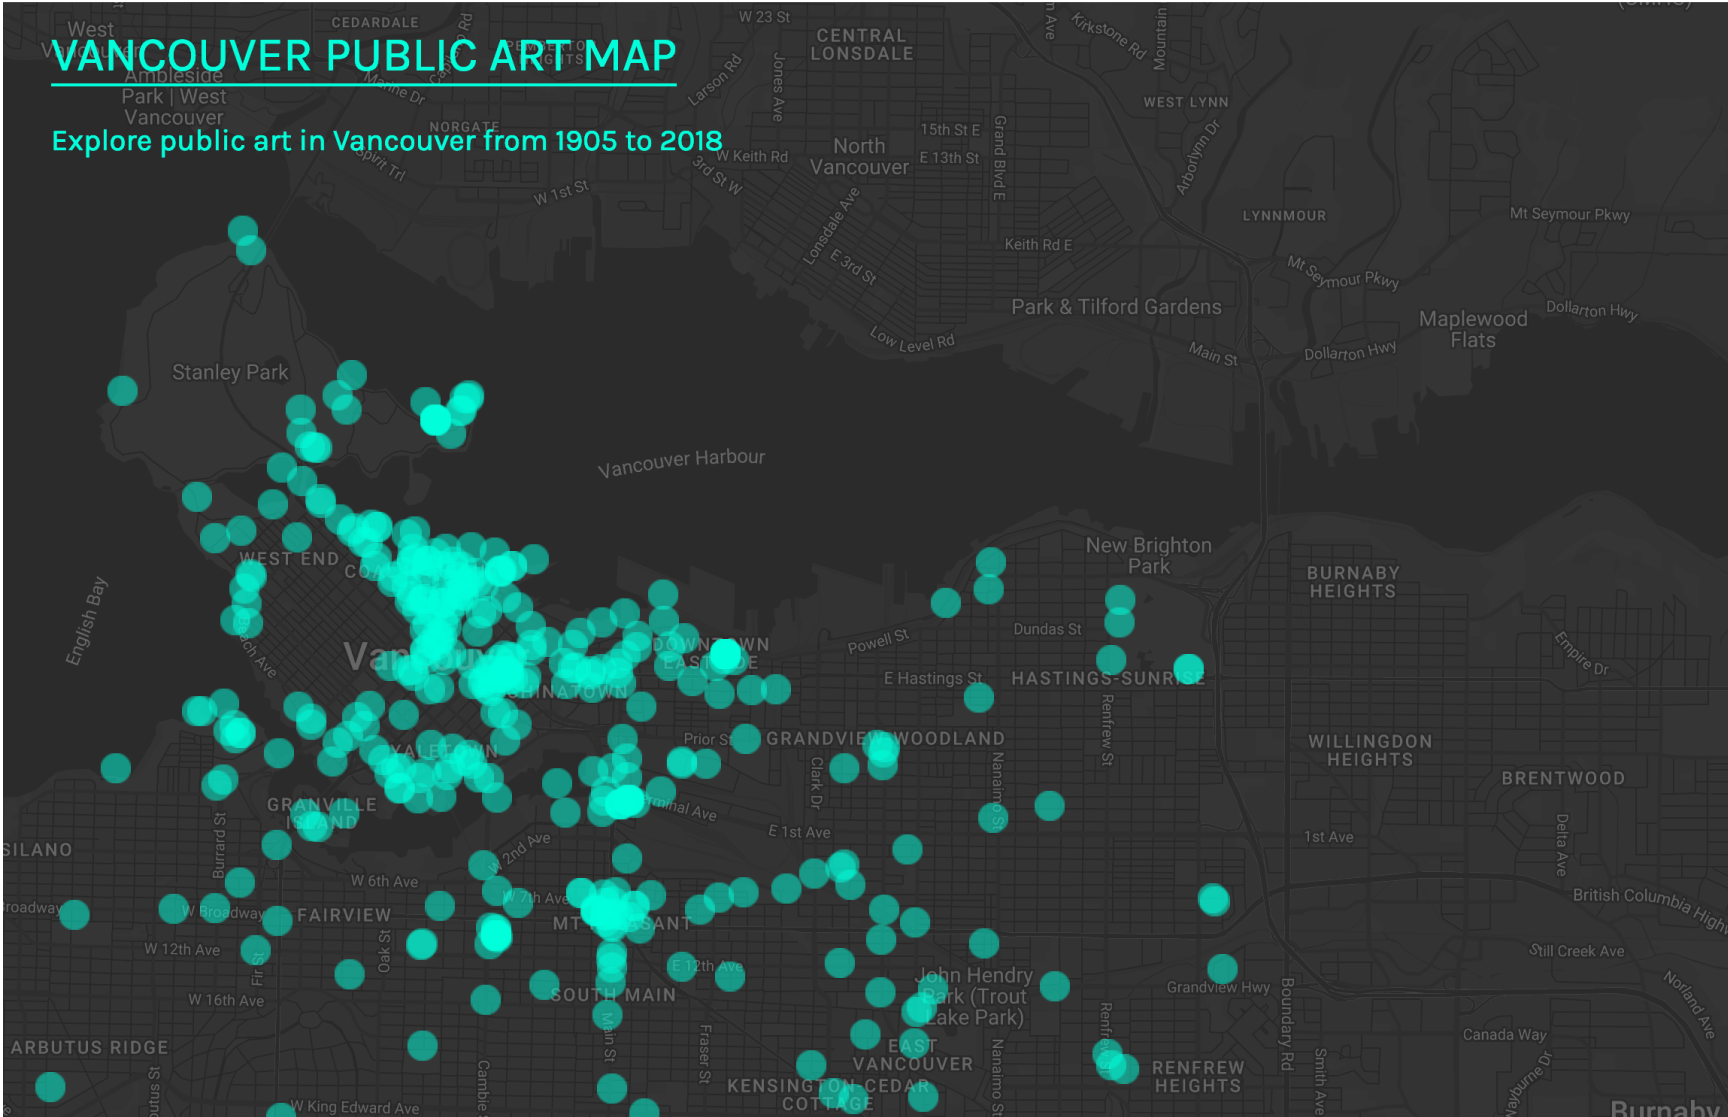 Vancouver Public Art Map landing page